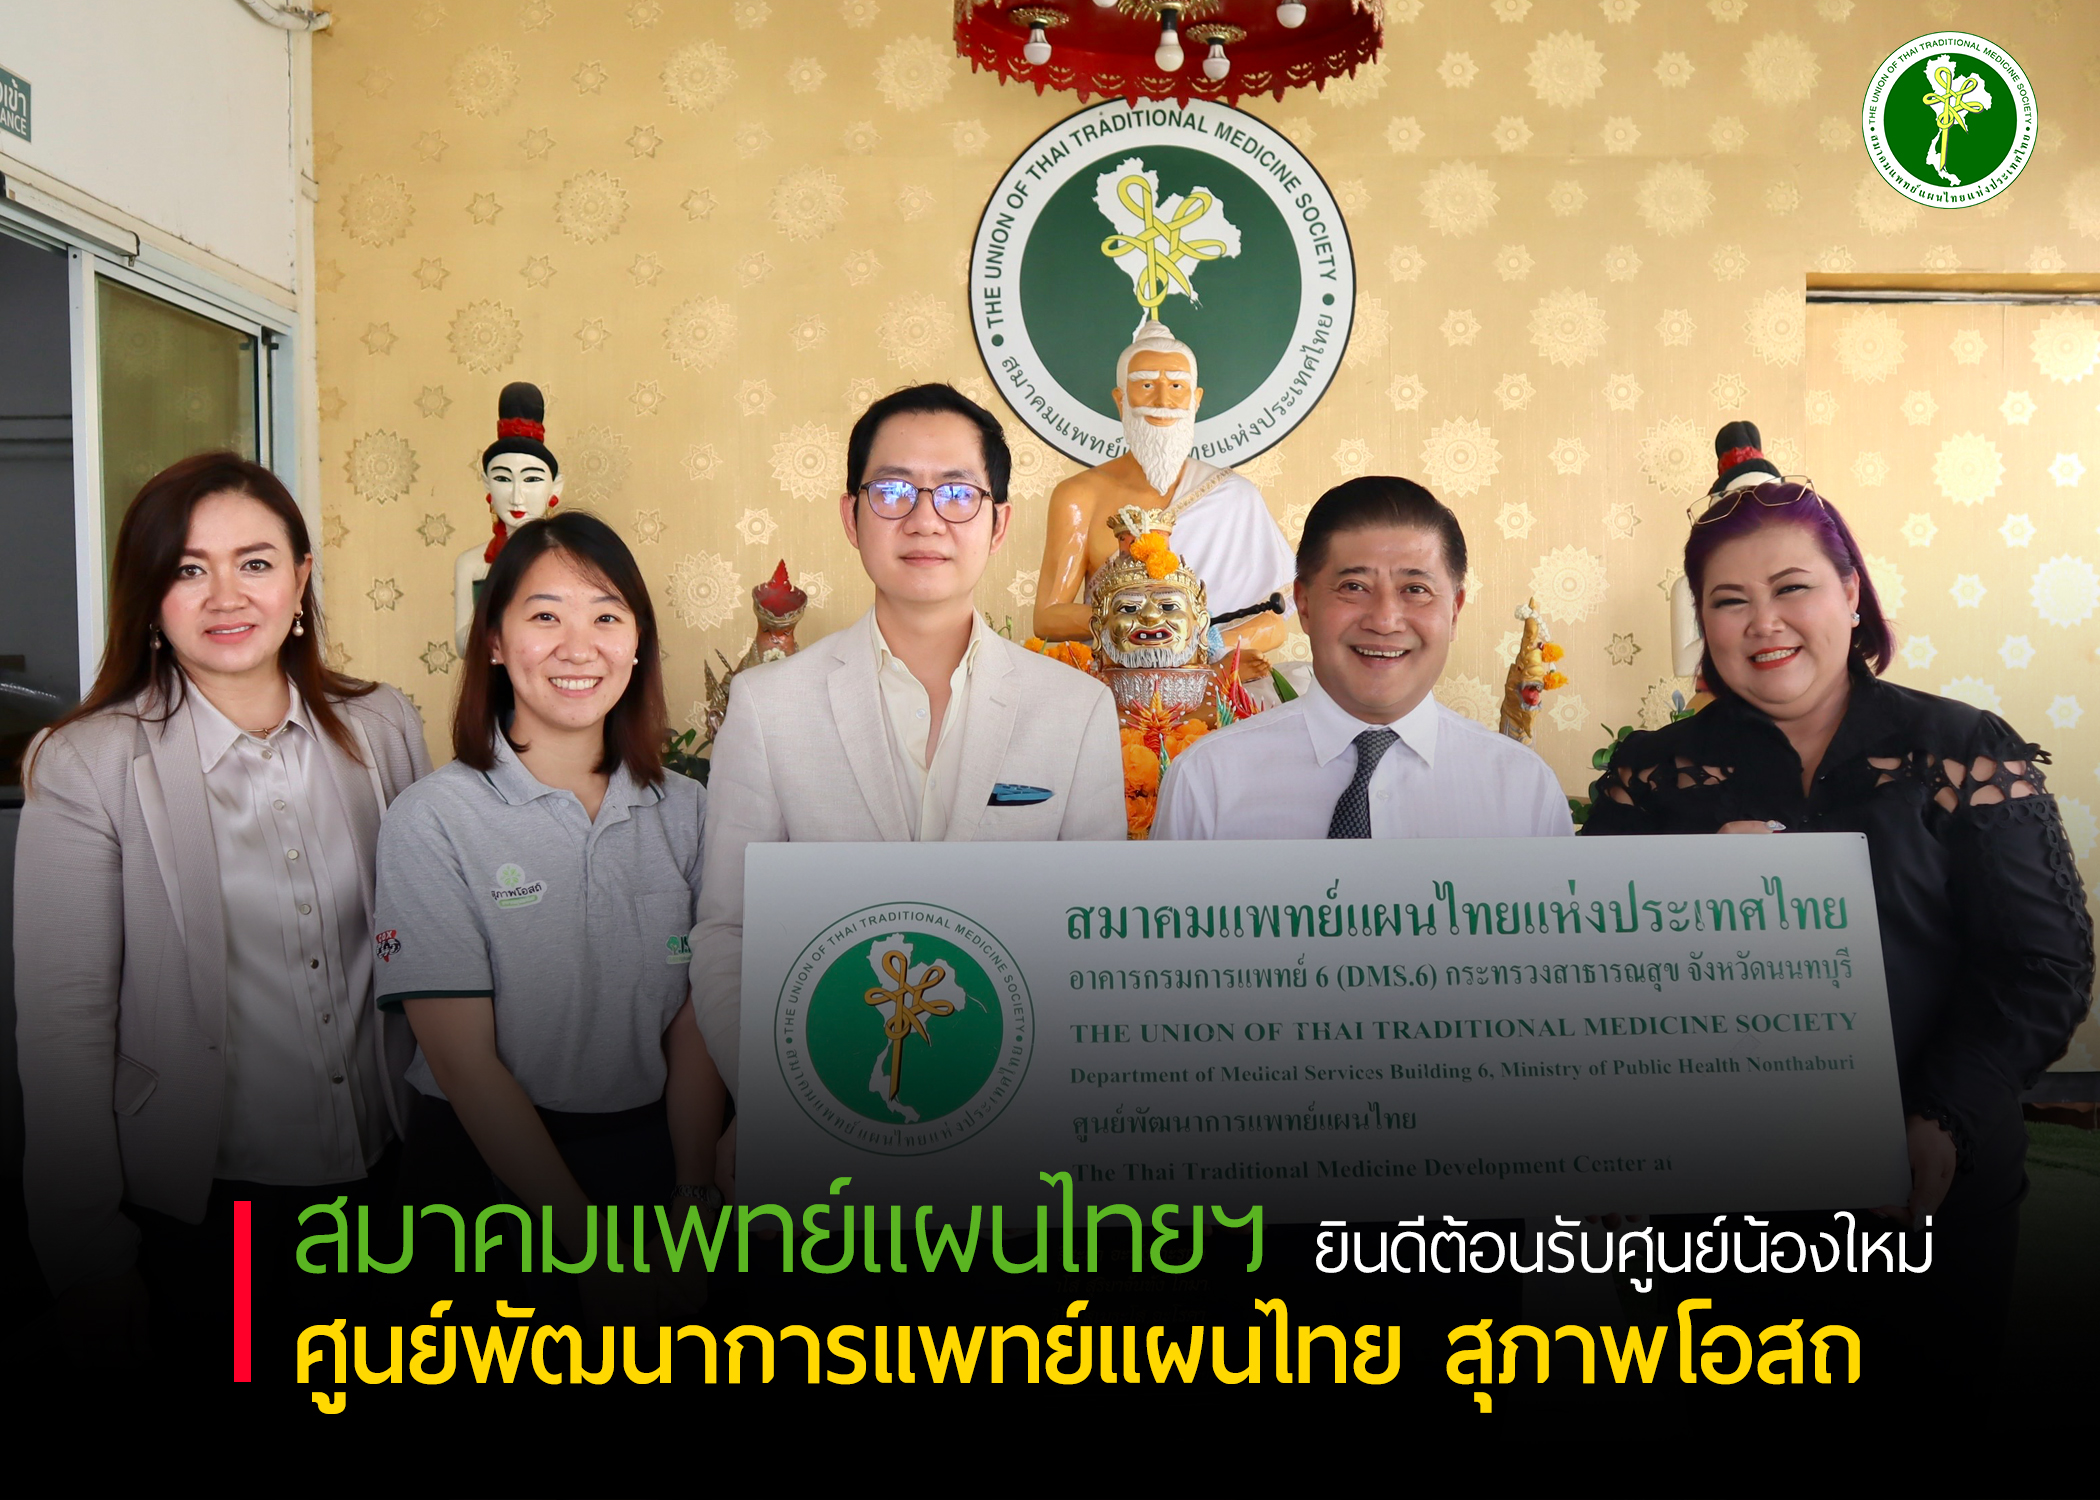 สมาคมแพทย์แผนไทยแห่งประเทศไทย ยินดีต้อนรับศูนย์น้องใหม่ ศูนย์พัฒนาการแพทย์แผนไทย สุภาพโอสถ